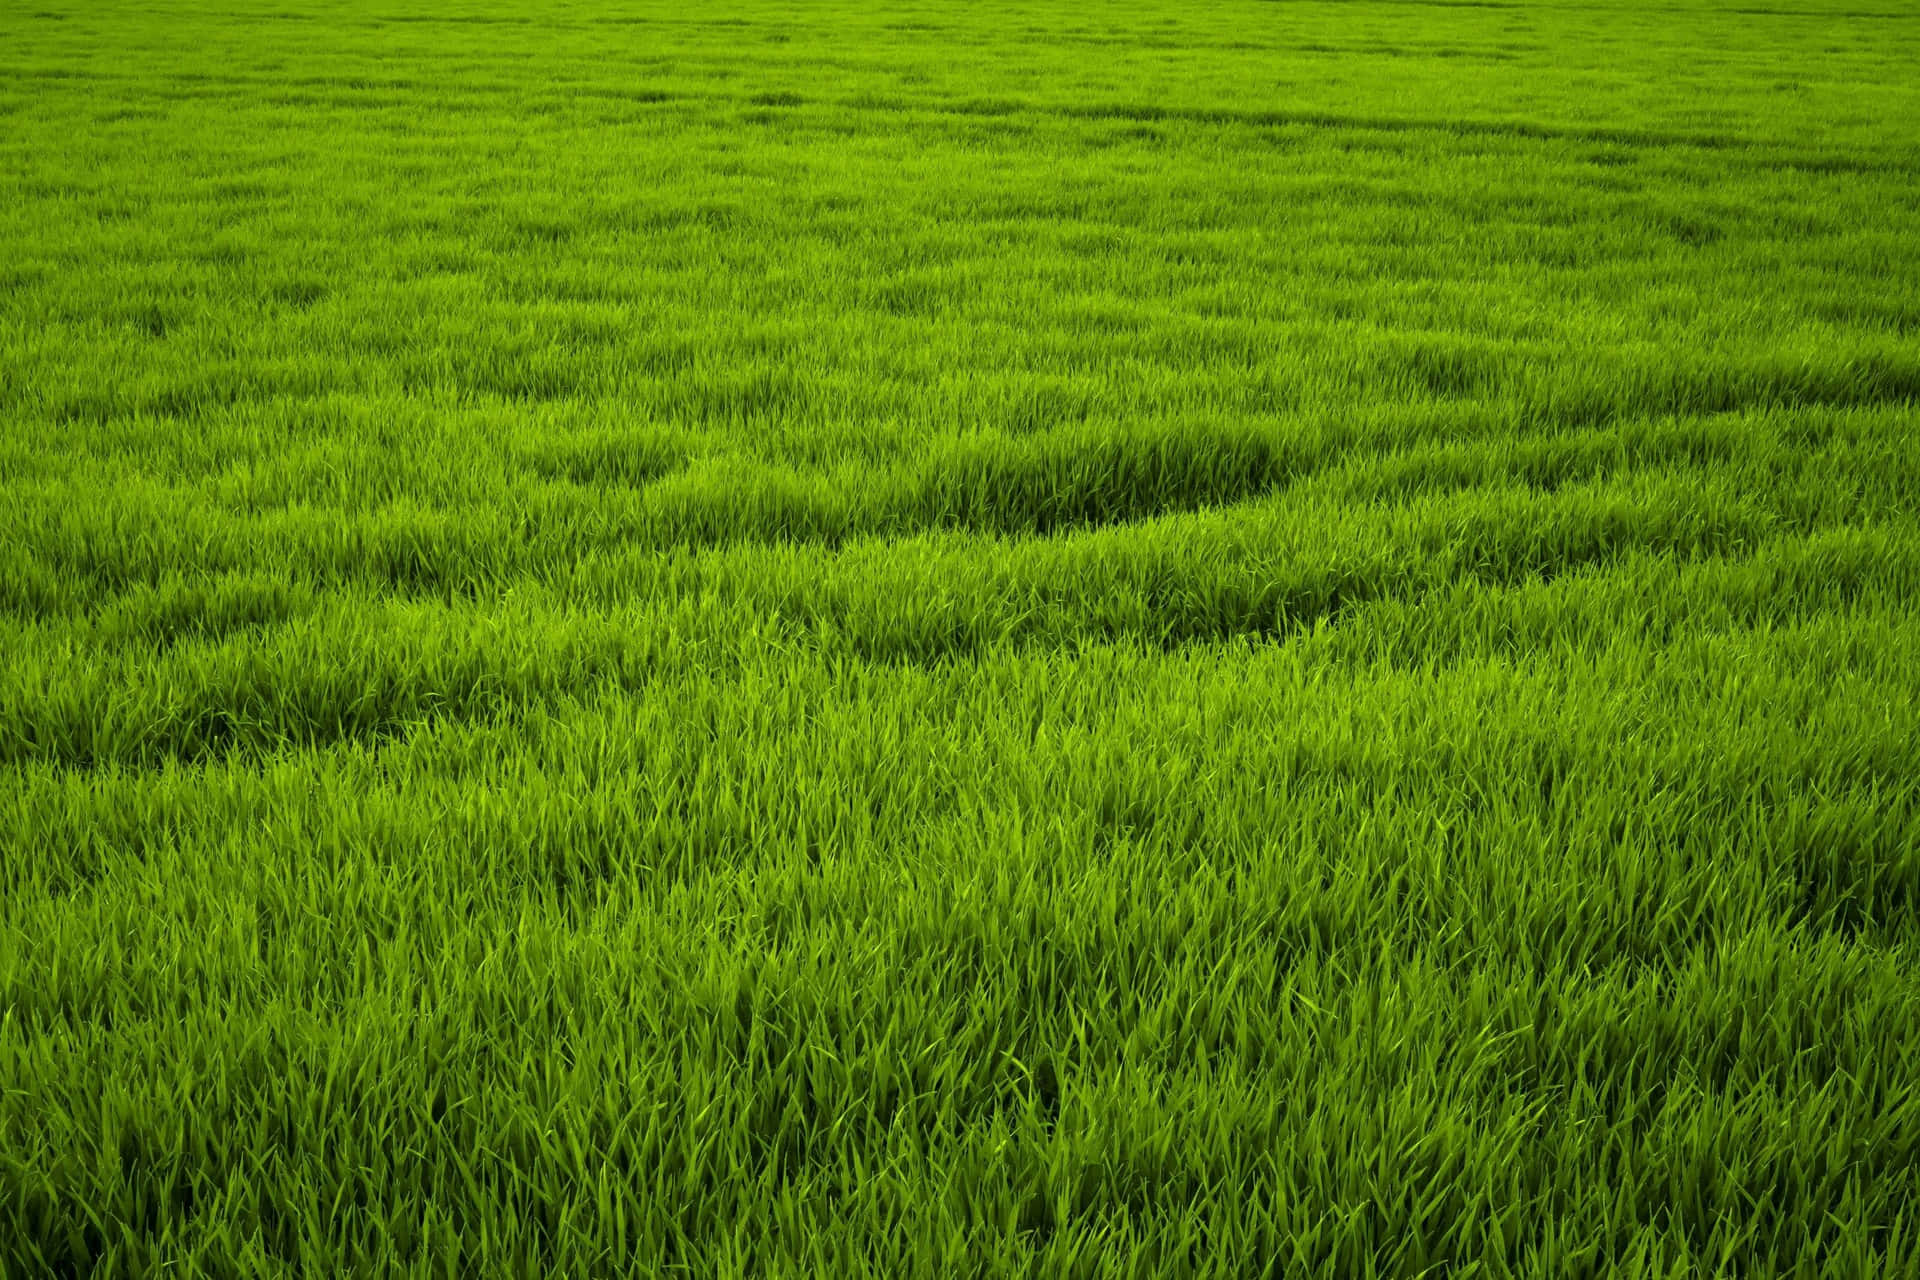 A field of lush, green grass